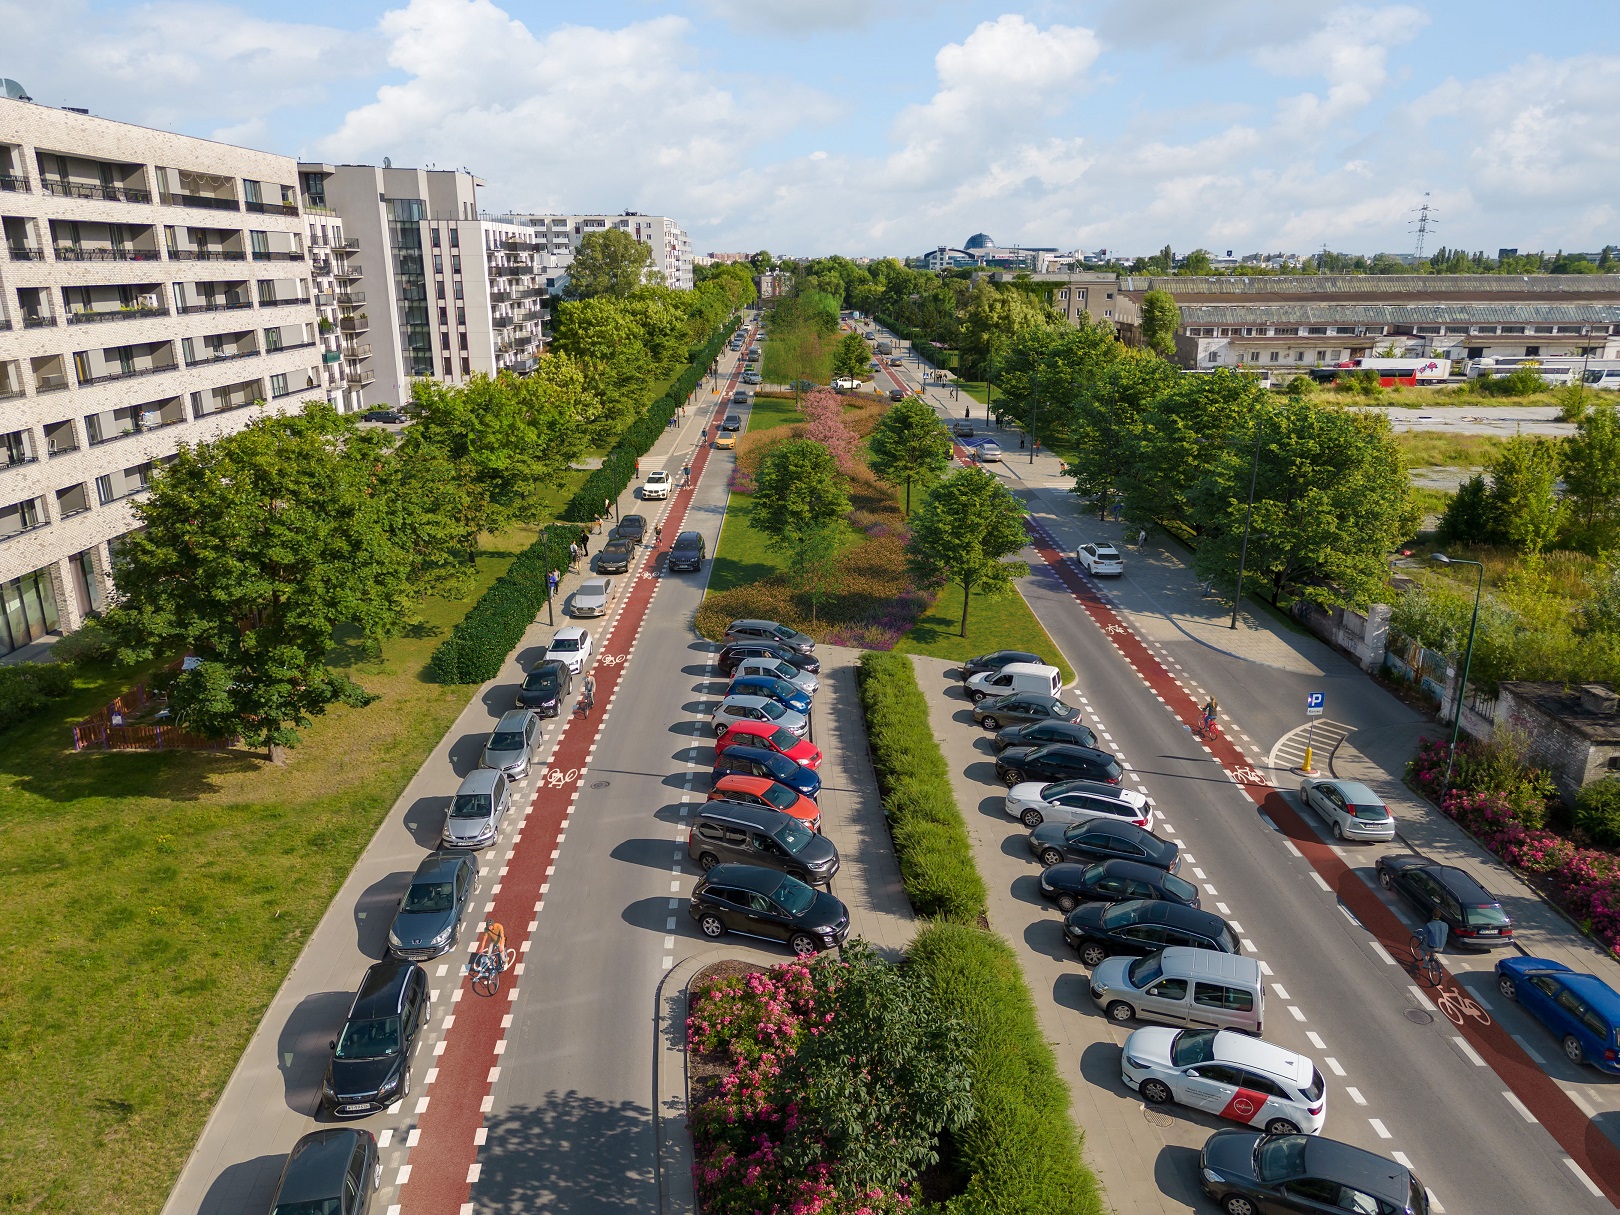 Wizualizacja przebudowy ulicy Ordona. Jezdnie przedzielone zielonym pasem, nowe drogi rowerowe i więcej miejsc parkingowych